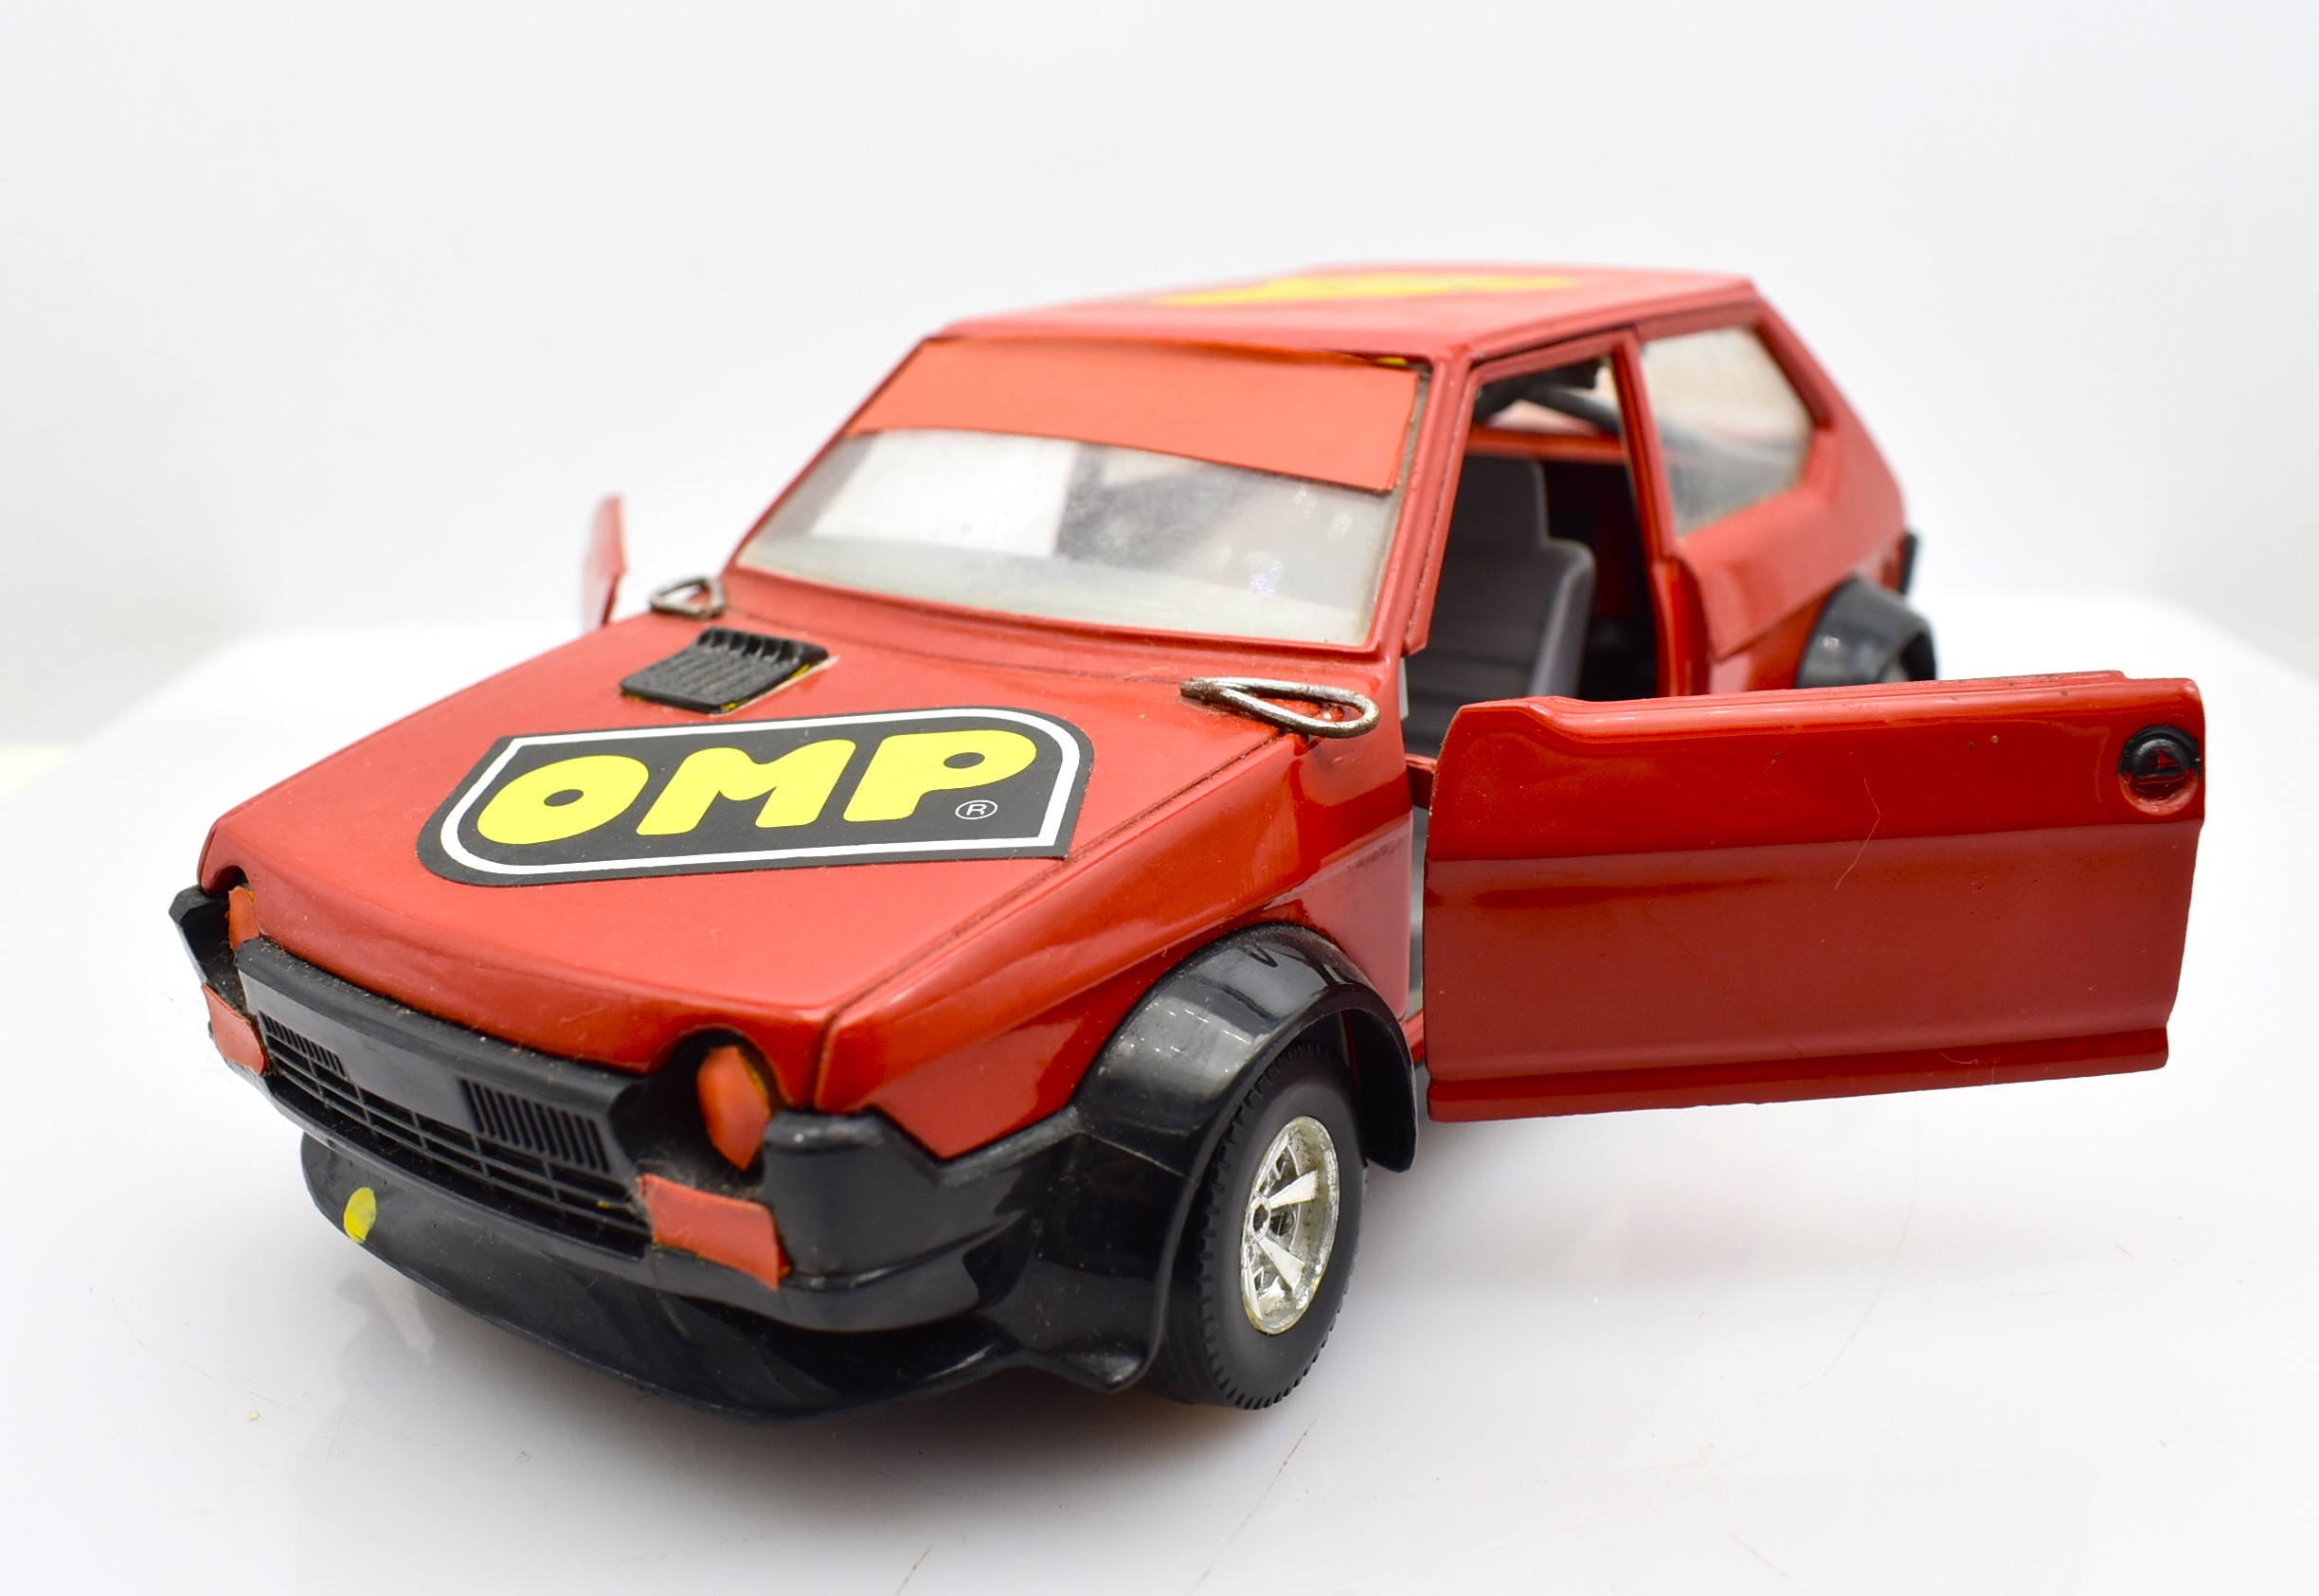 modellauto Rallye-Fiat Ritmo Abarth Maßstab 1:24bburagodiecastmodellbaugebraucht